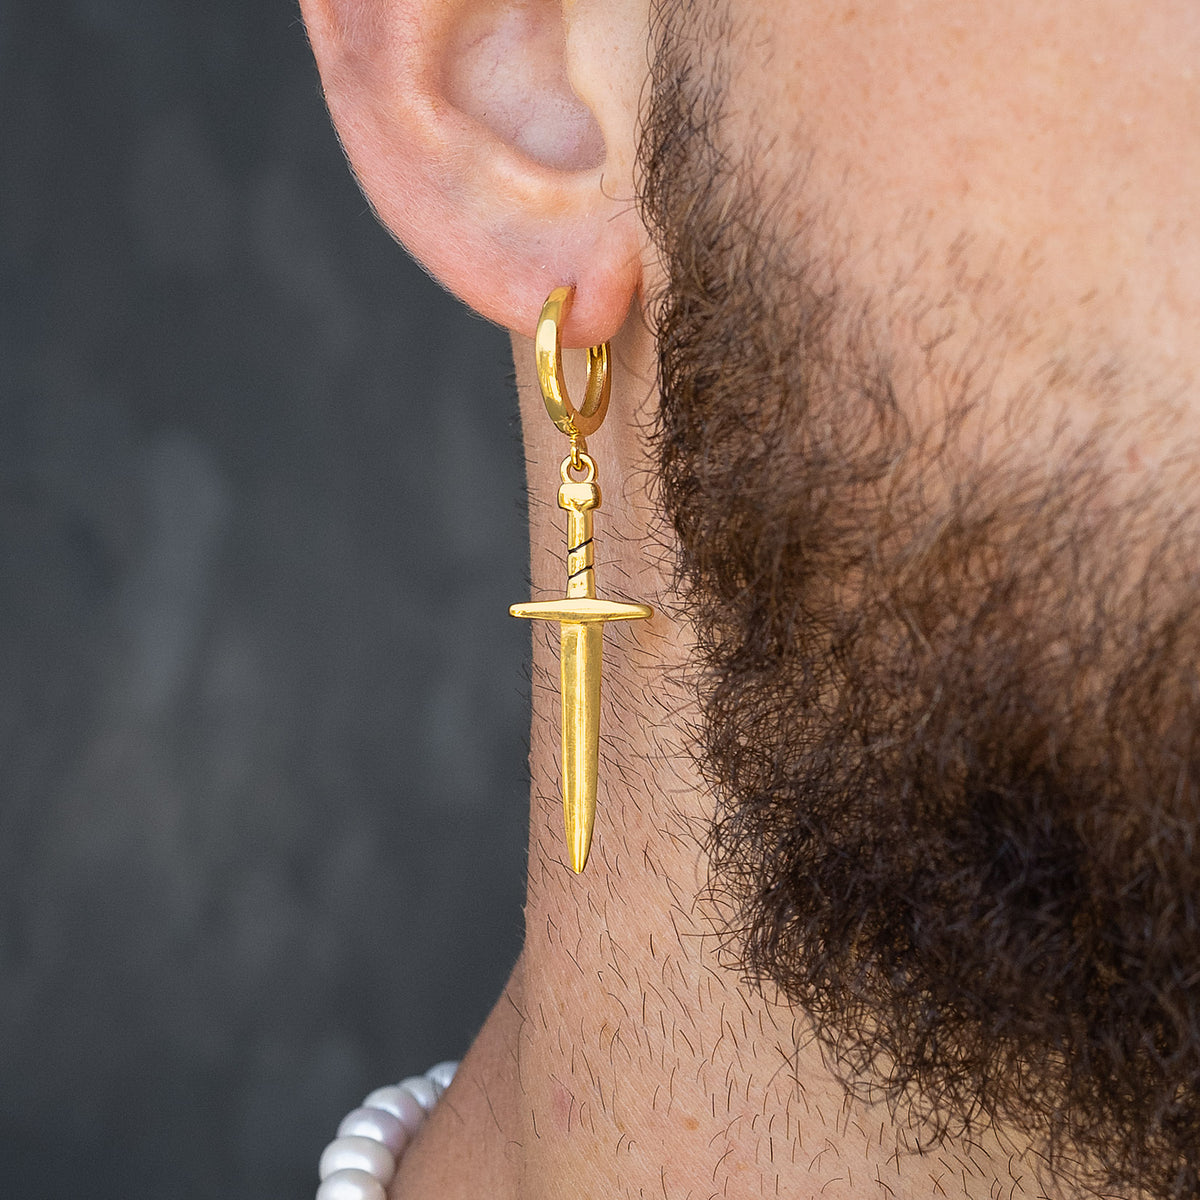 dagger earring in 18k gold